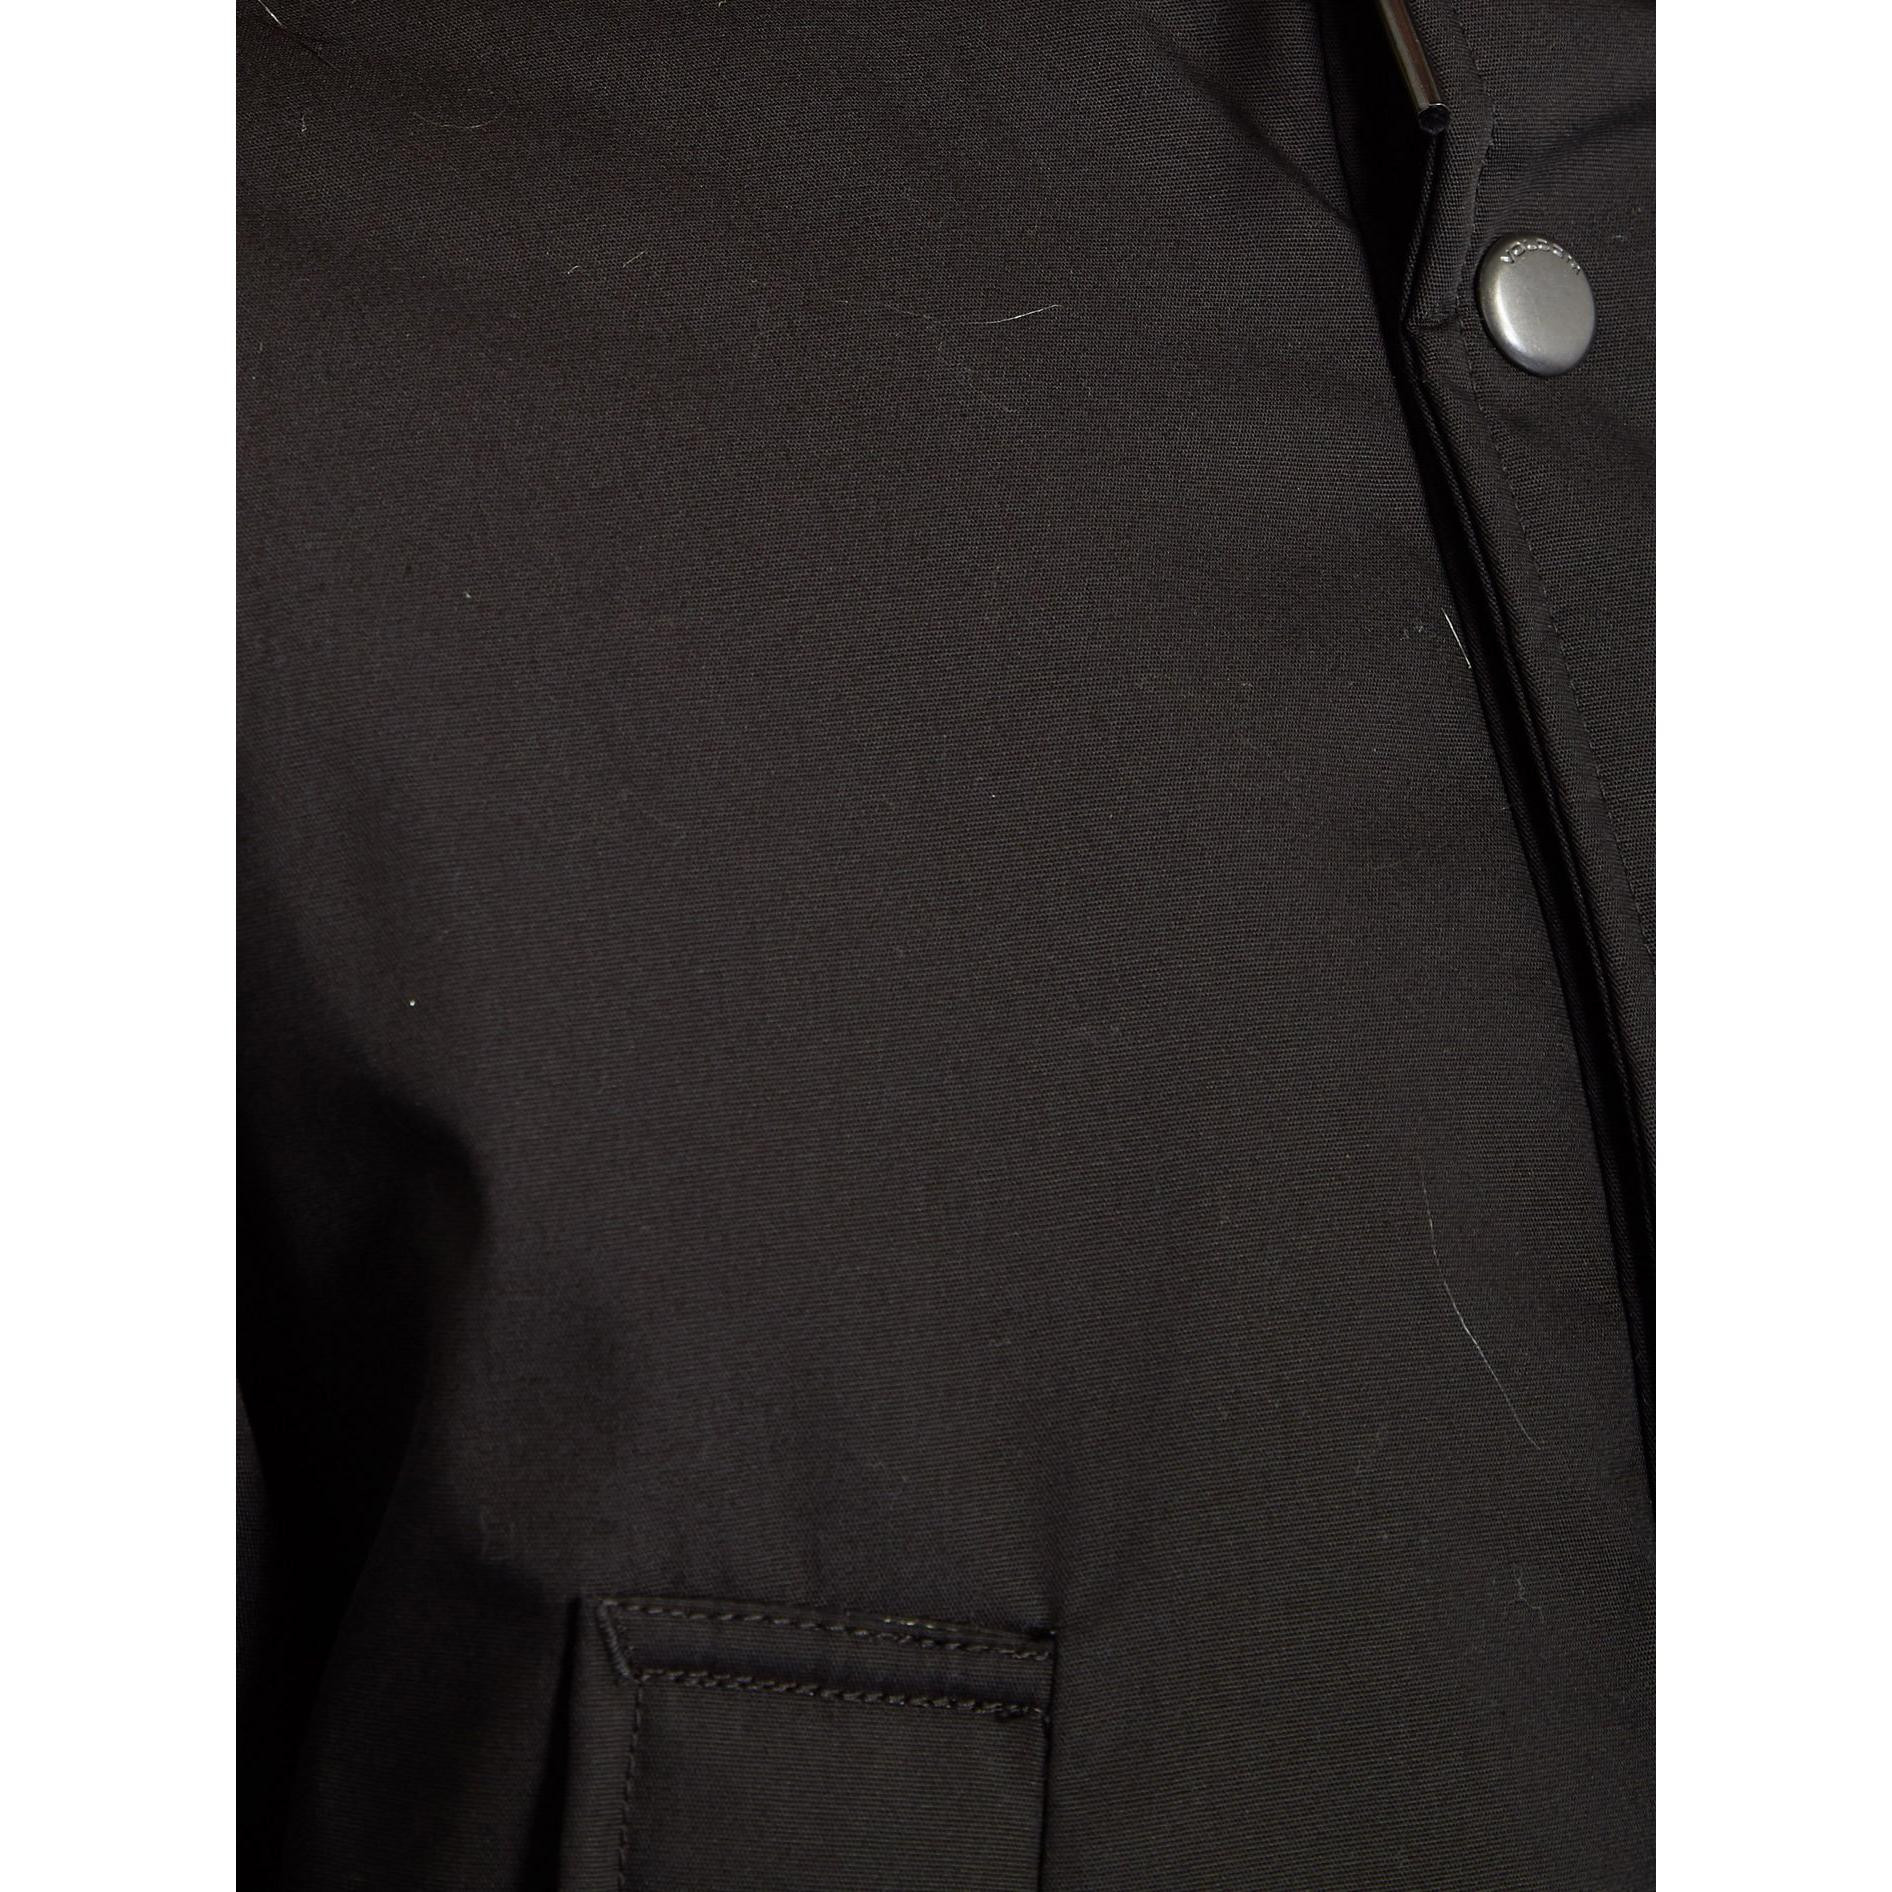 Lifestyle Jacket Volcom Lidward 5k Jacket Black Homme - Free Shipping!